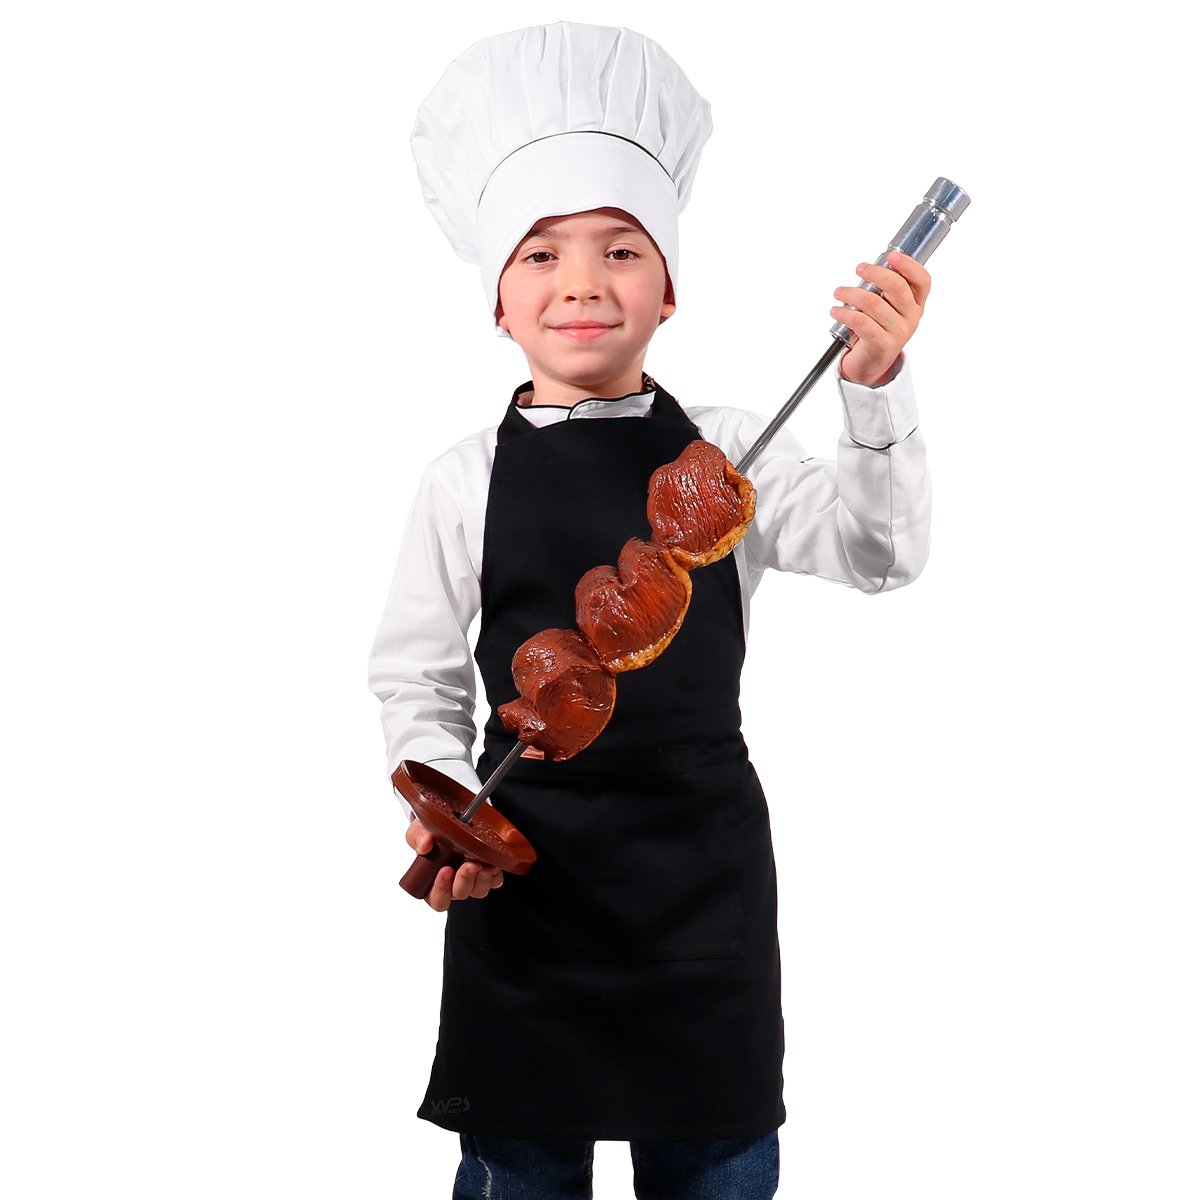 Avental Infantil Chef de Cozinha Corpo Inteiro de 04 a 08 anos - Wp Connect - Preto - Único - 5